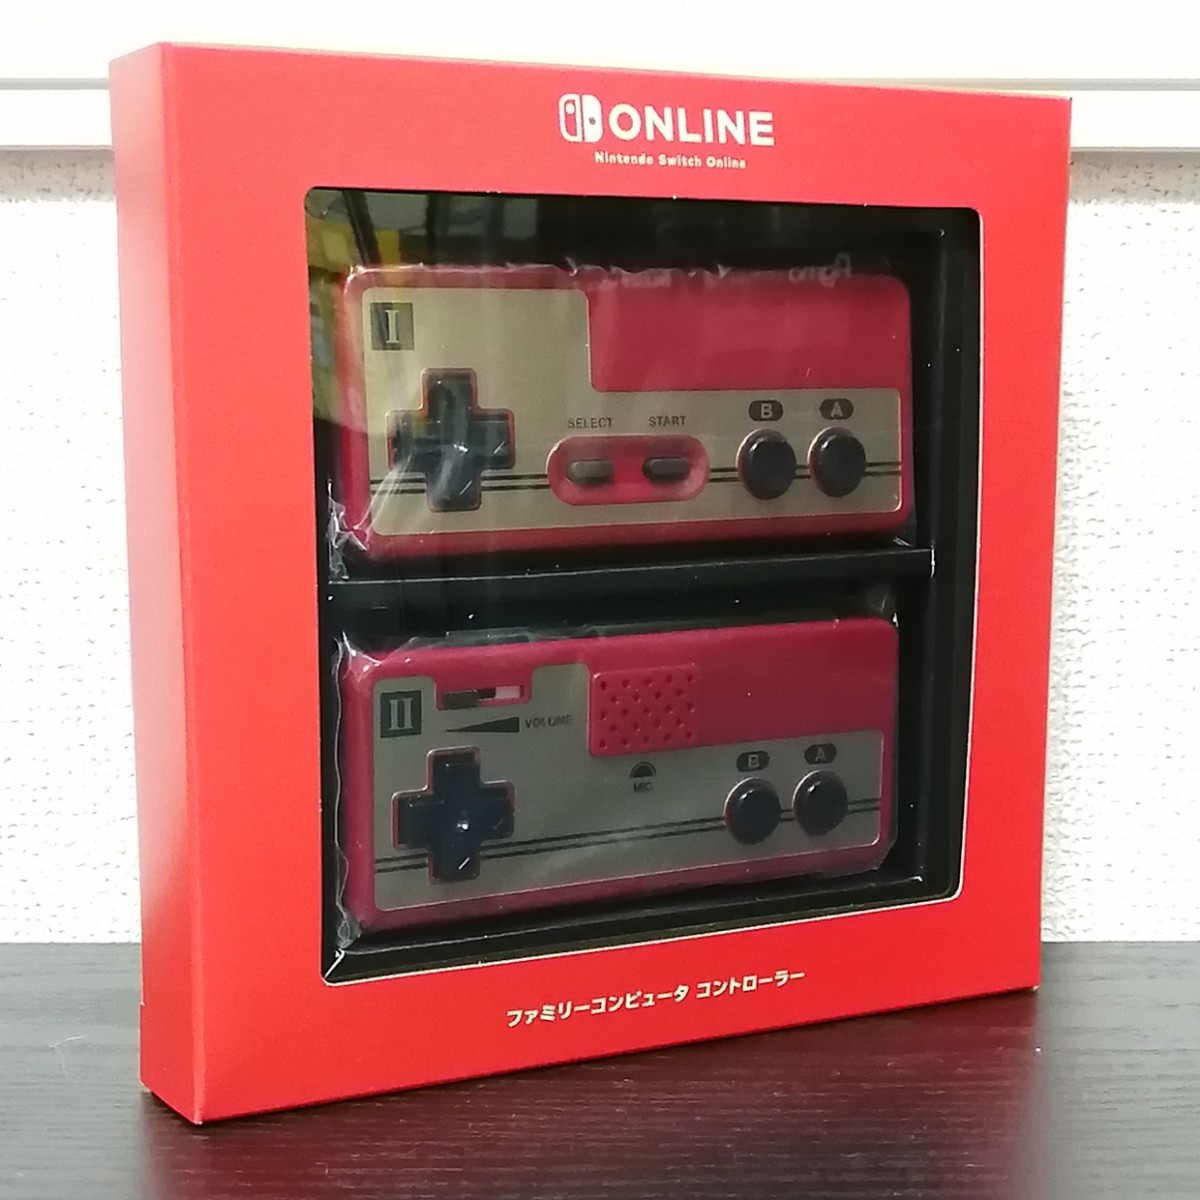 【通販 人気】 《新品未開封》マイニンテンドーストア コントローラー ファミコン Online Switch Nintendo ファミリーコンピュータ ニンテンドースイッチ ニンテンドースイッチアクセサリー